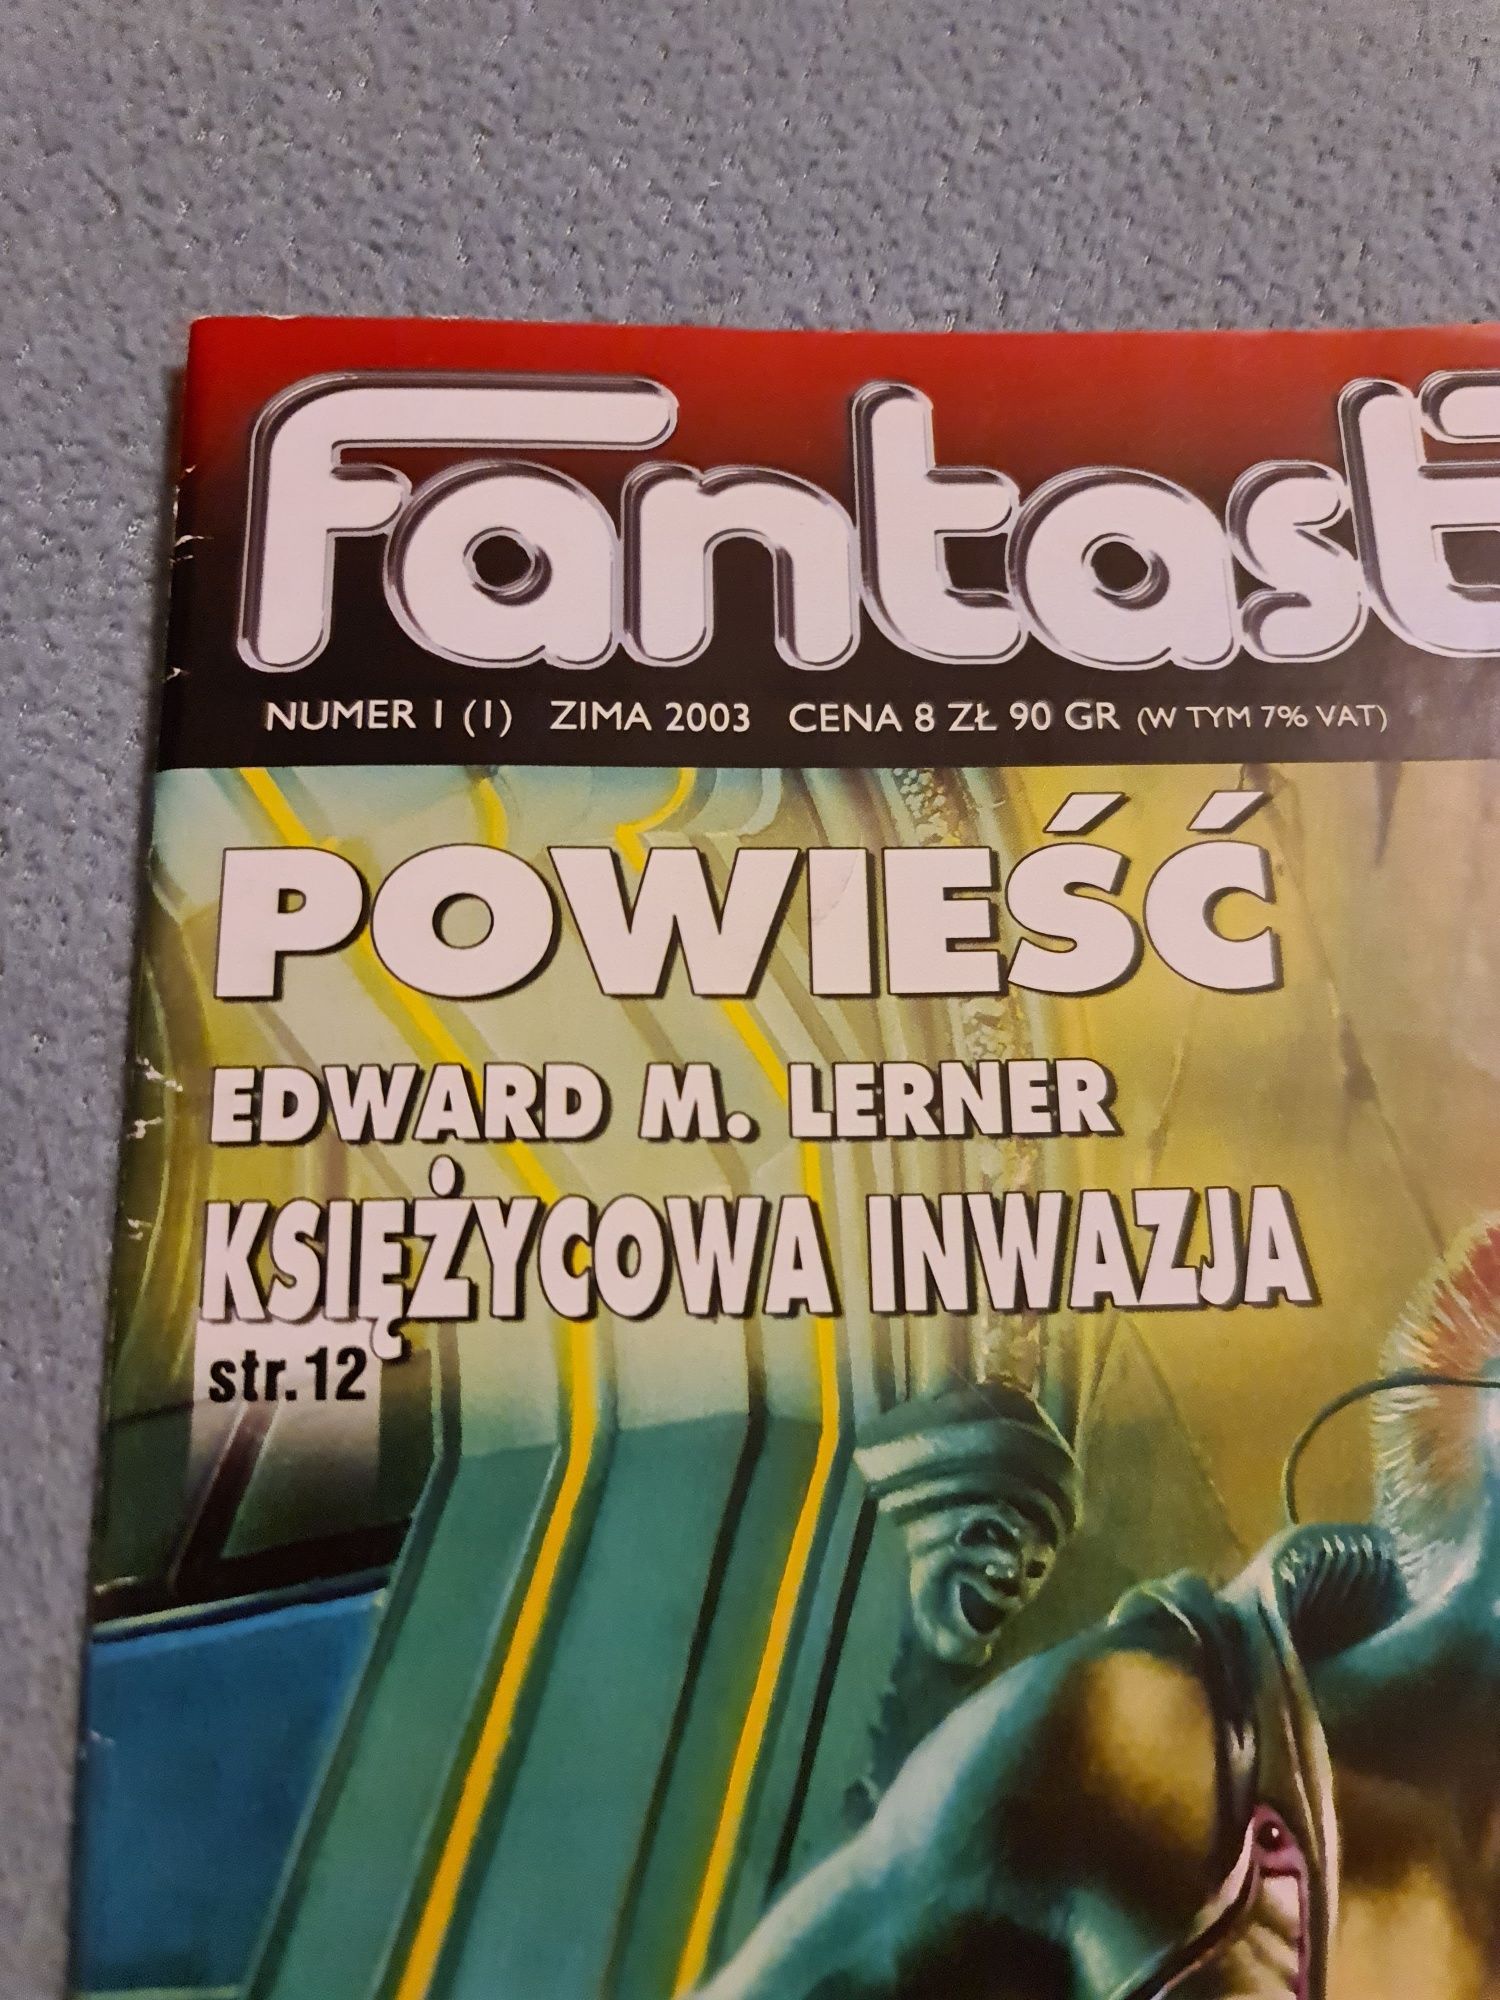 Fantastyka nr 1 Zima 2003 wydanie specjalne